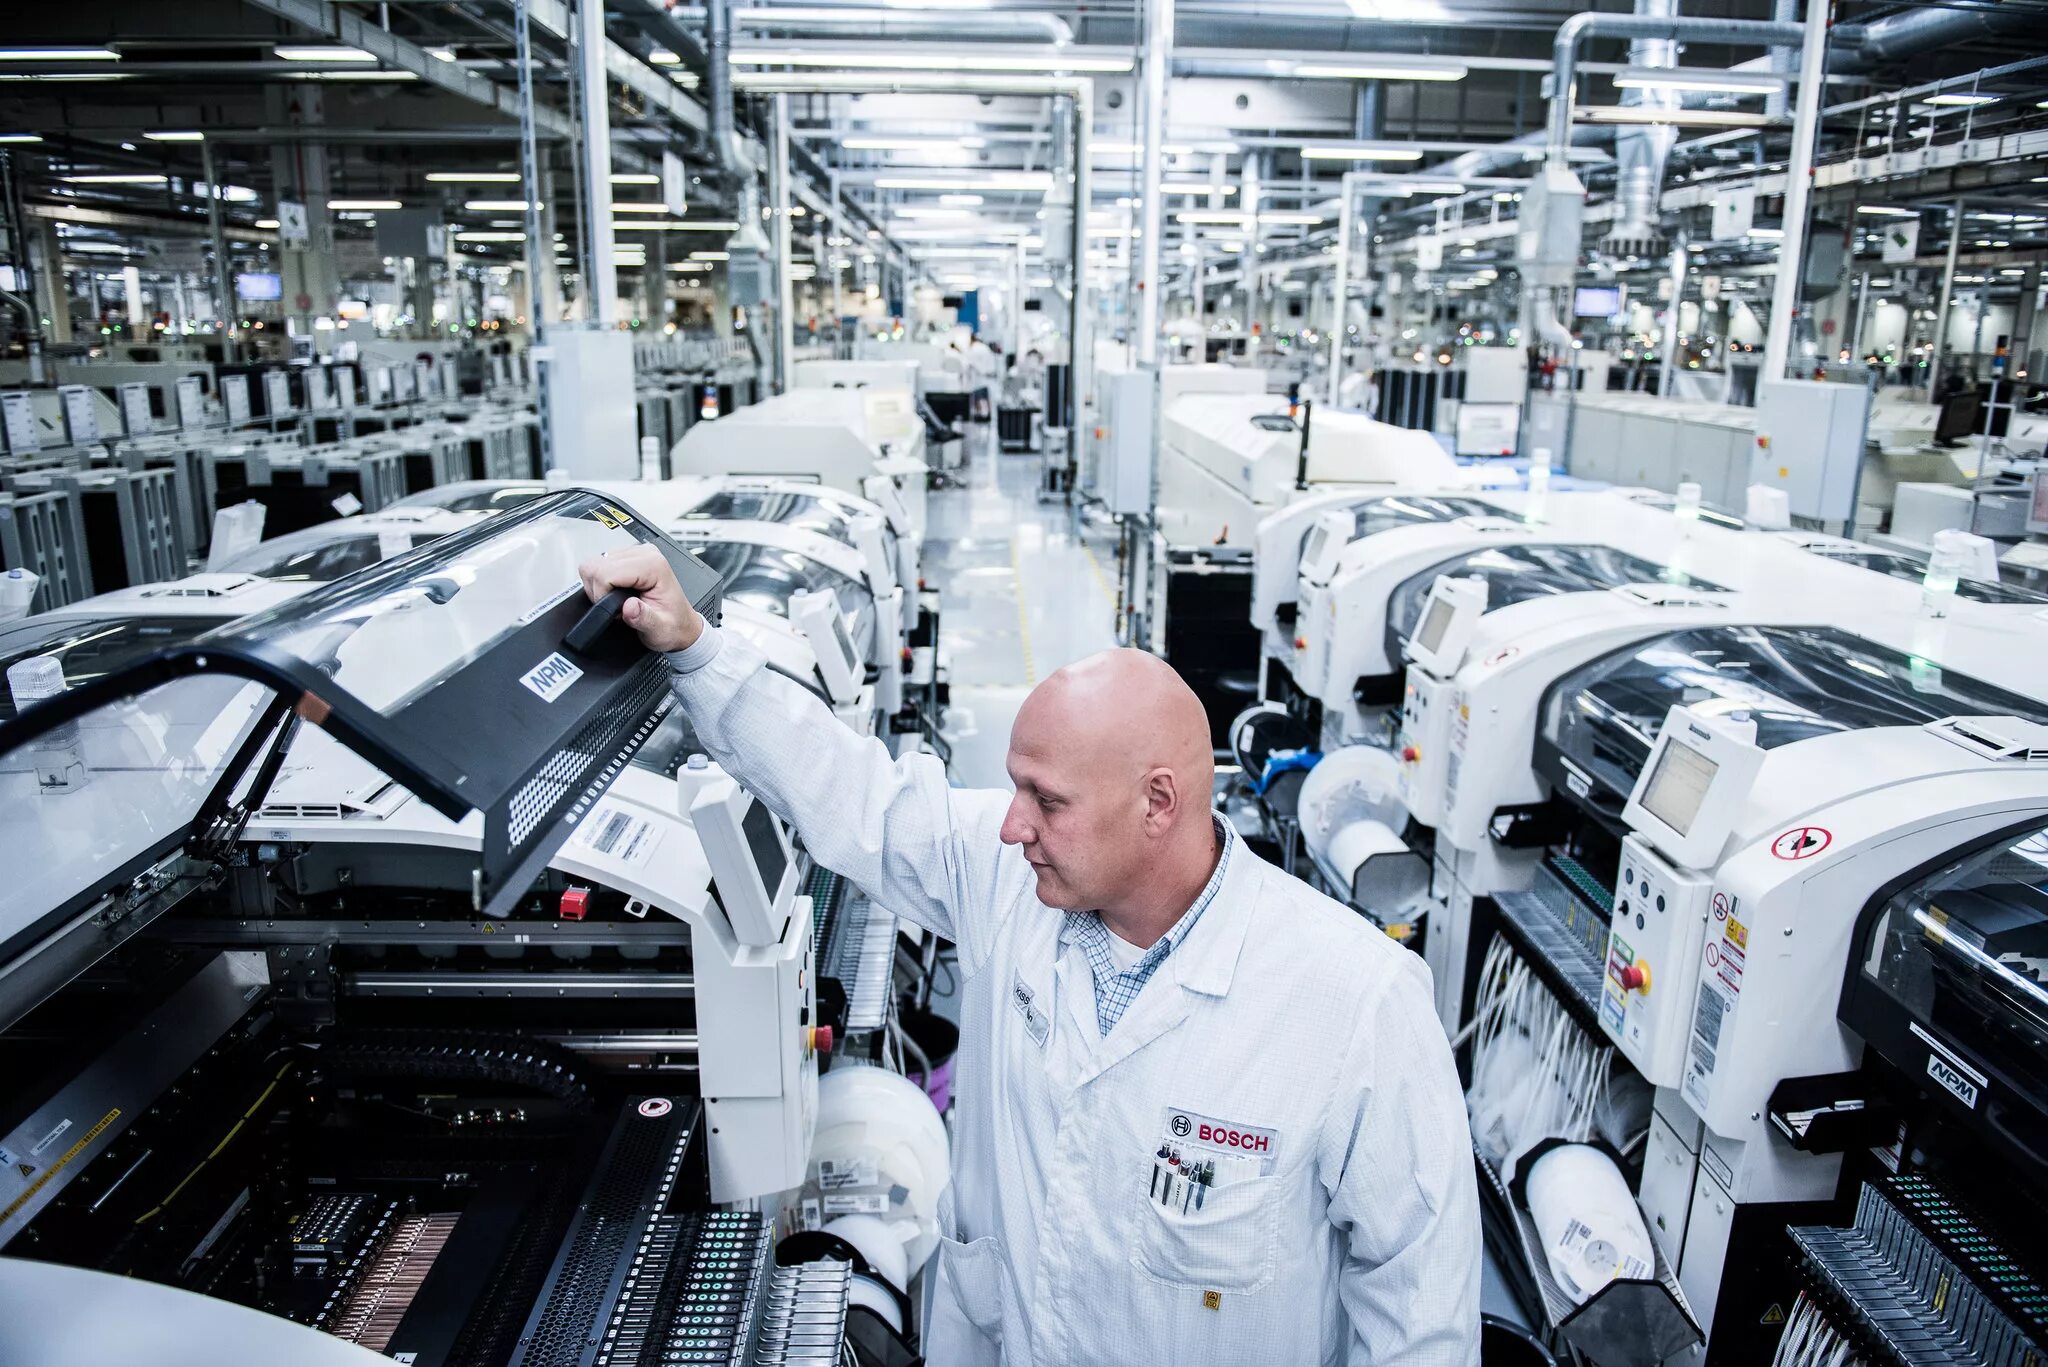 Фирма бош Германию. Завод Bosch в Германии. Завод по производству бытовой техники